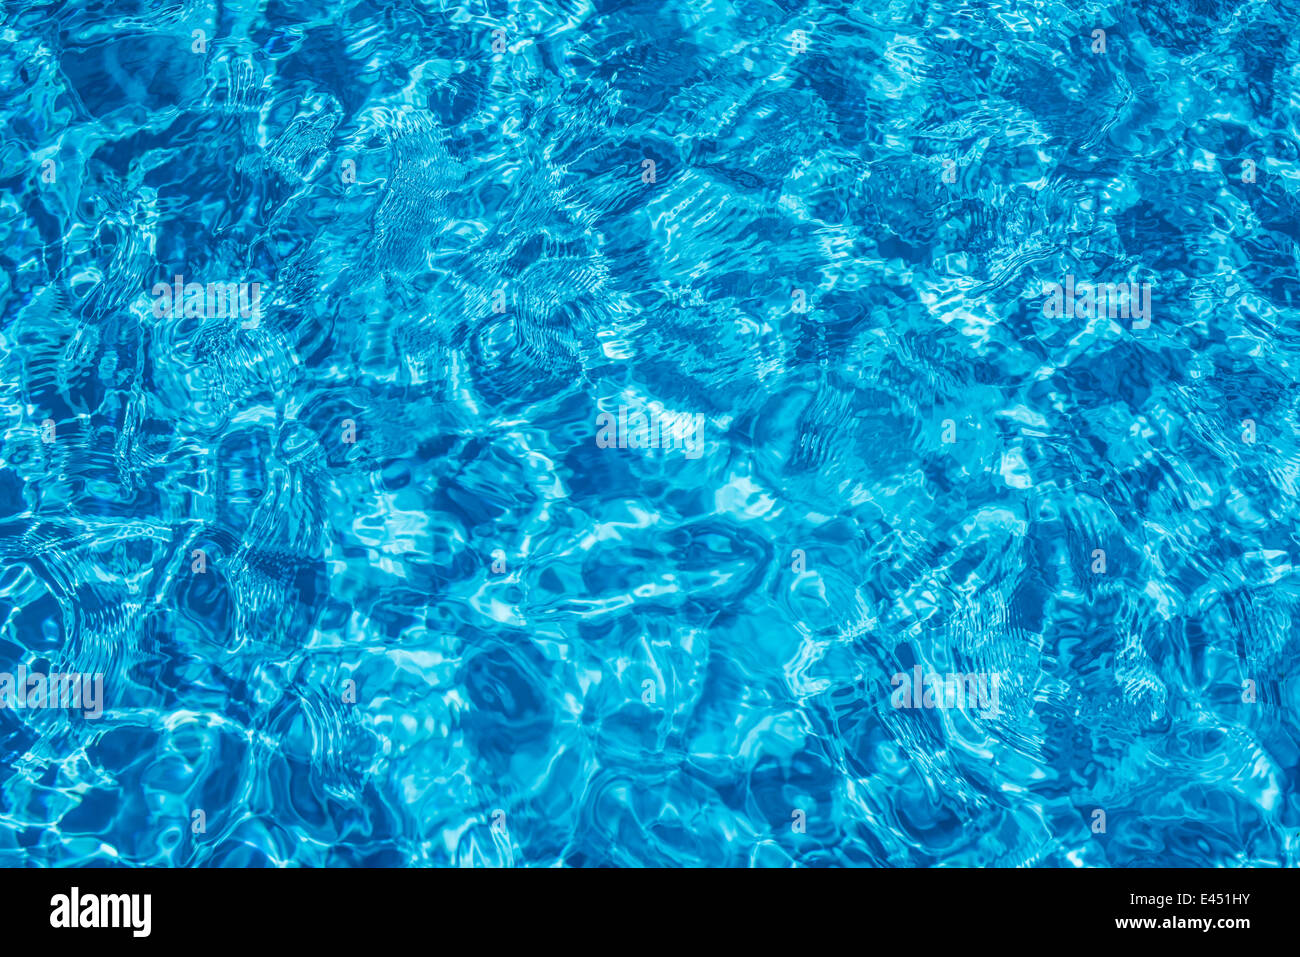 La superficie de agua en una piscina de color azul Foto de stock